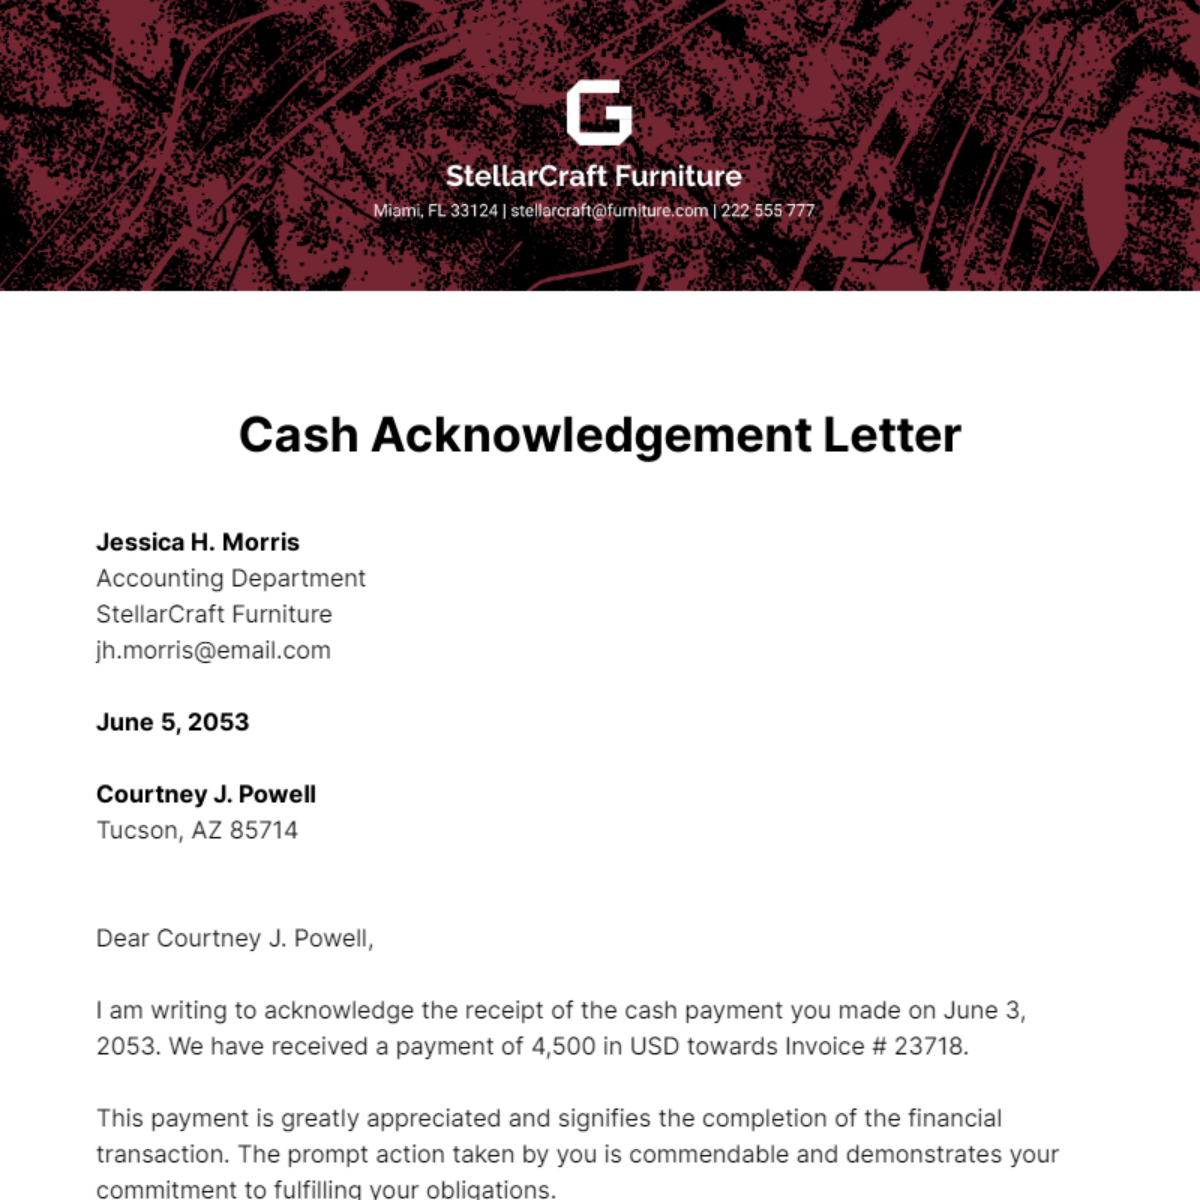 Cash Acknowledgement Letter Template